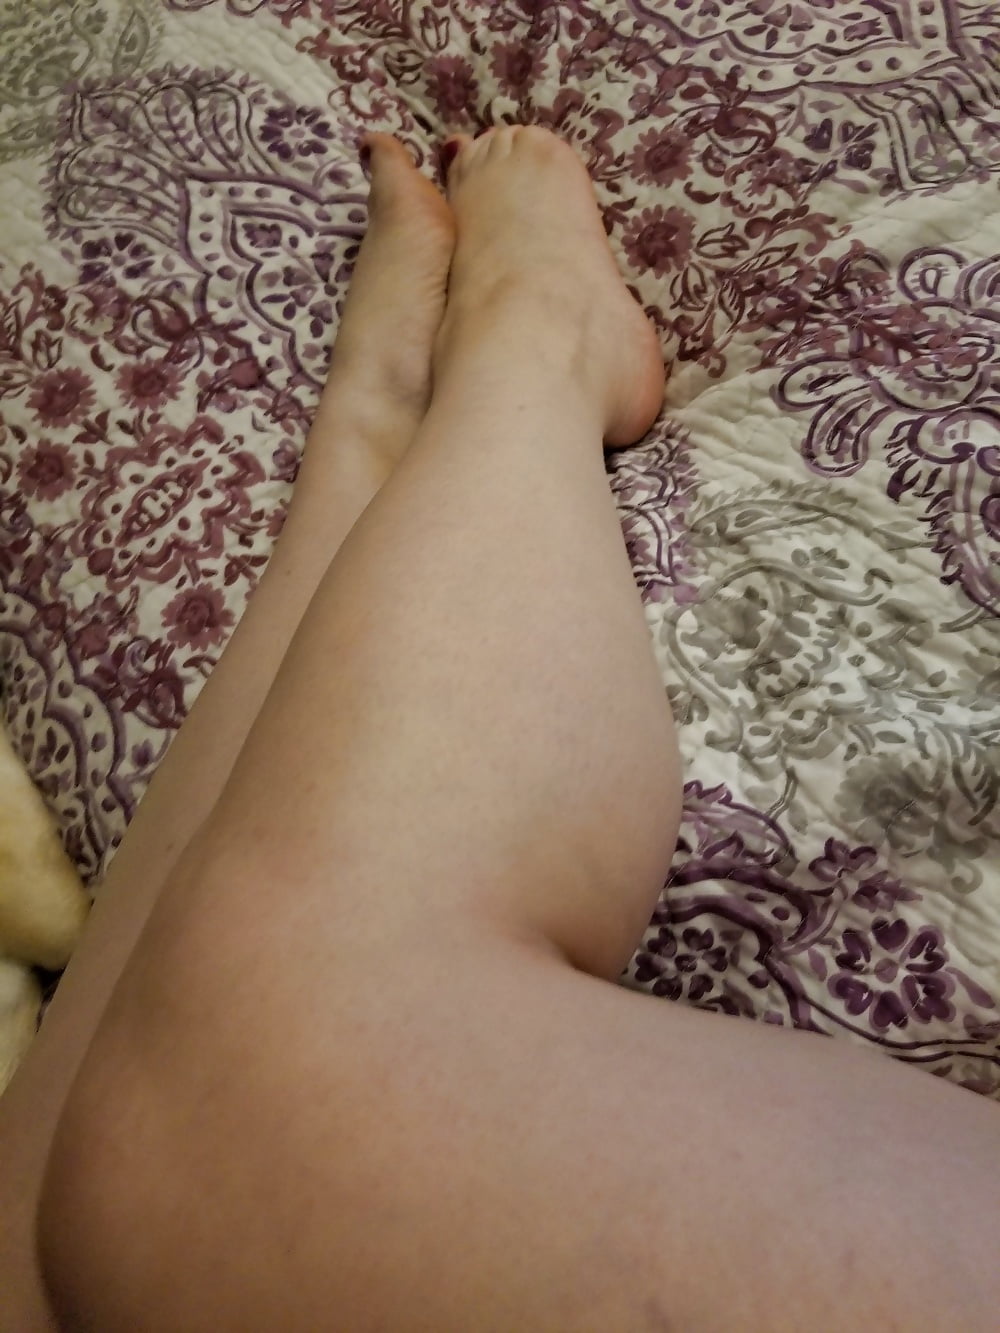 Piedi, gambe, tacchi e stivali della dolce casalinga sexy
 #106605642